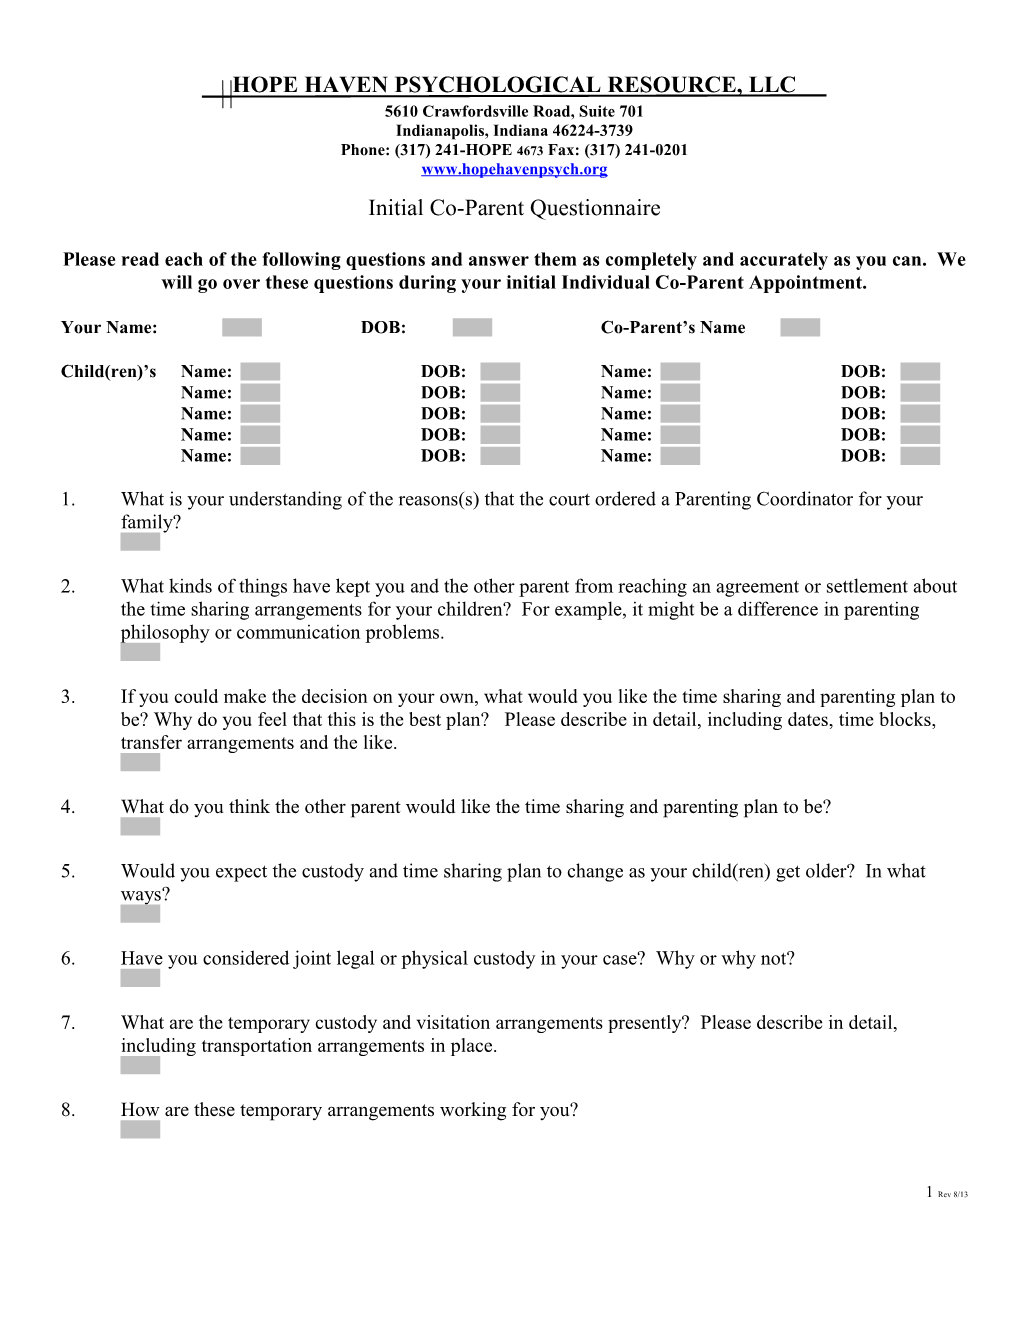 Initial Parent Questionnaire